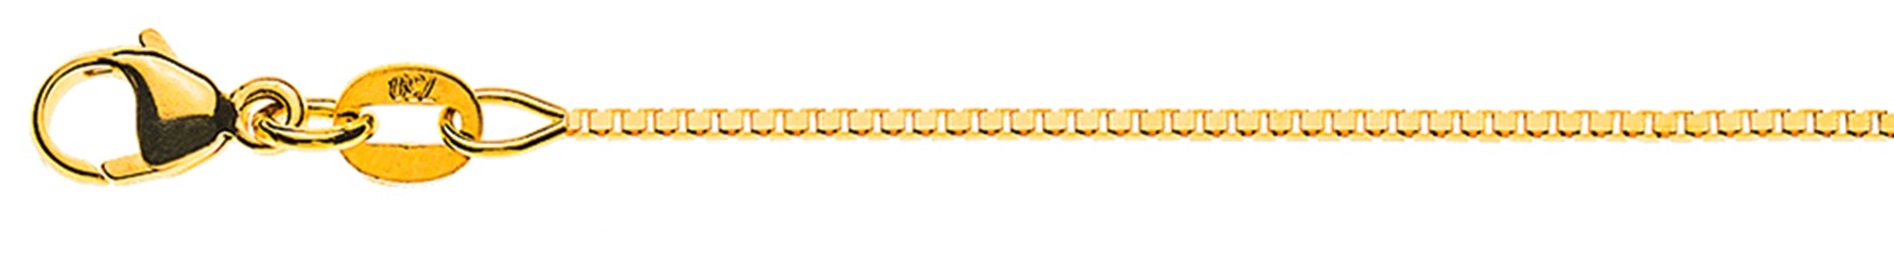 AURONOS Élégance Necklace yellow gold 14K Venetian chain diamond cut 38cm 0.9mm